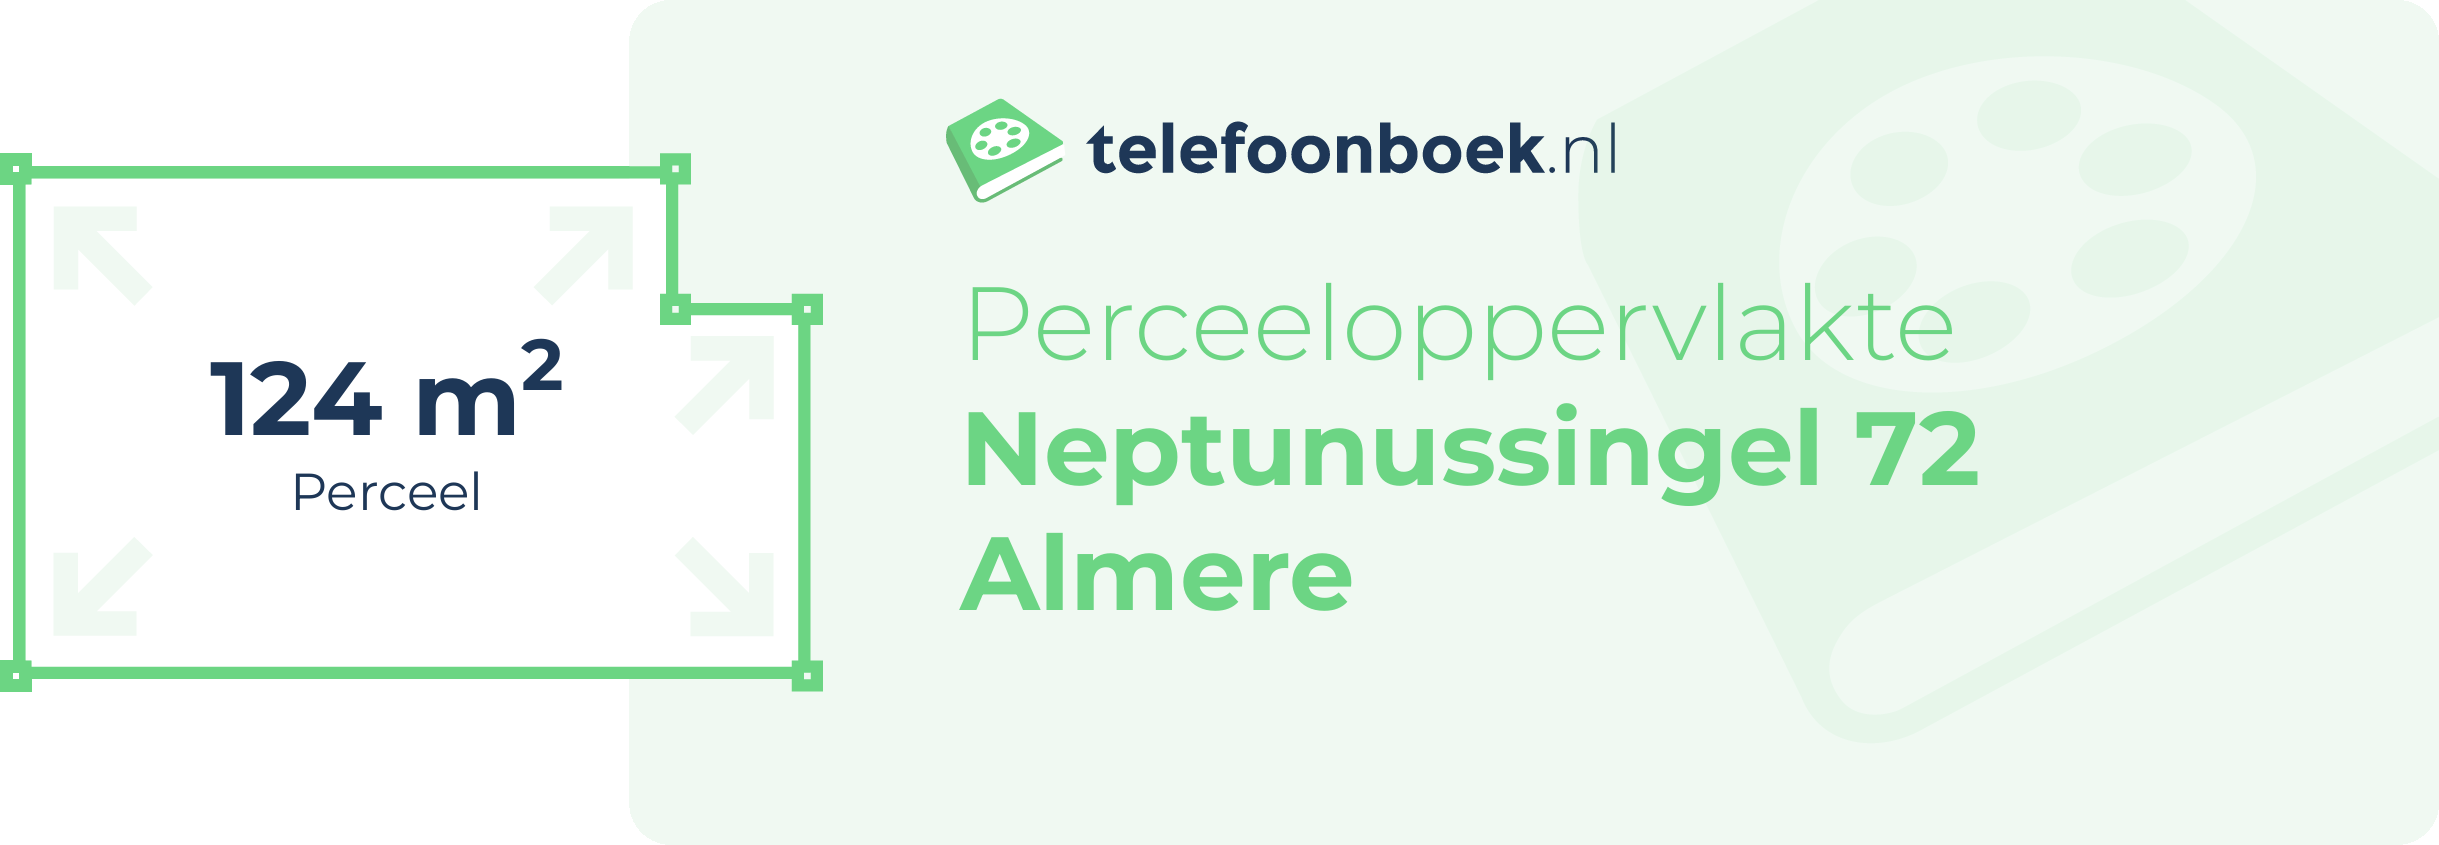 Perceeloppervlakte Neptunussingel 72 Almere